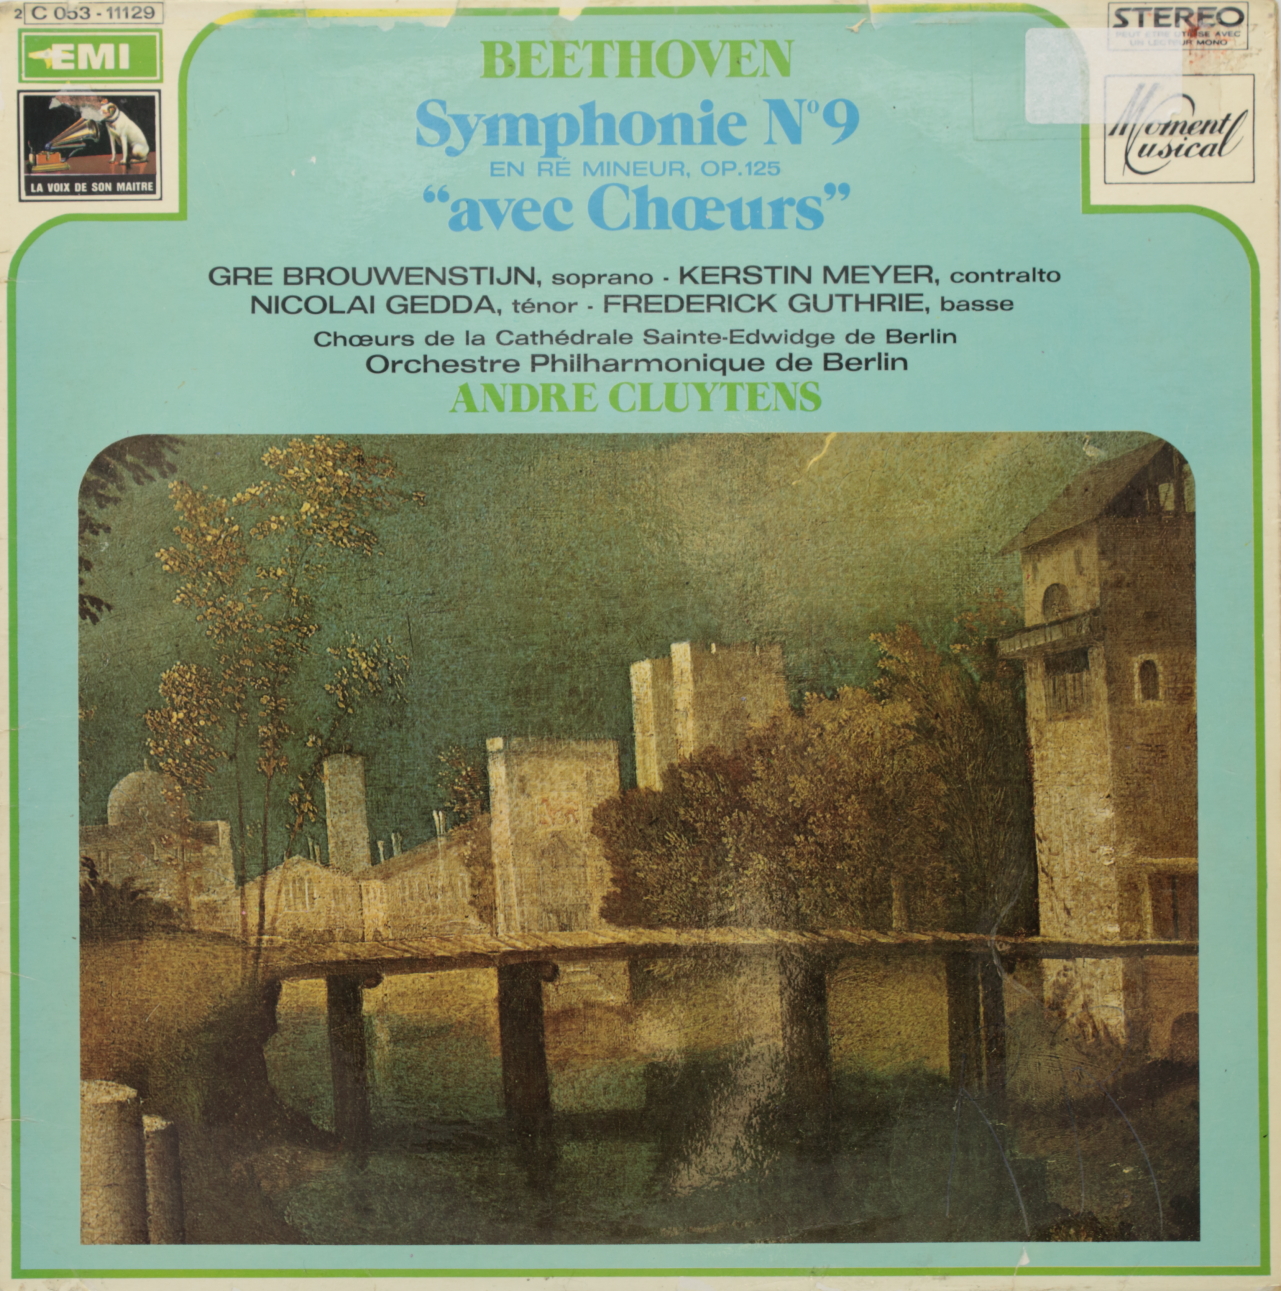 Beethoven: Symphonie Nº 9 en Ré mineur, Op 125 avec choeurs